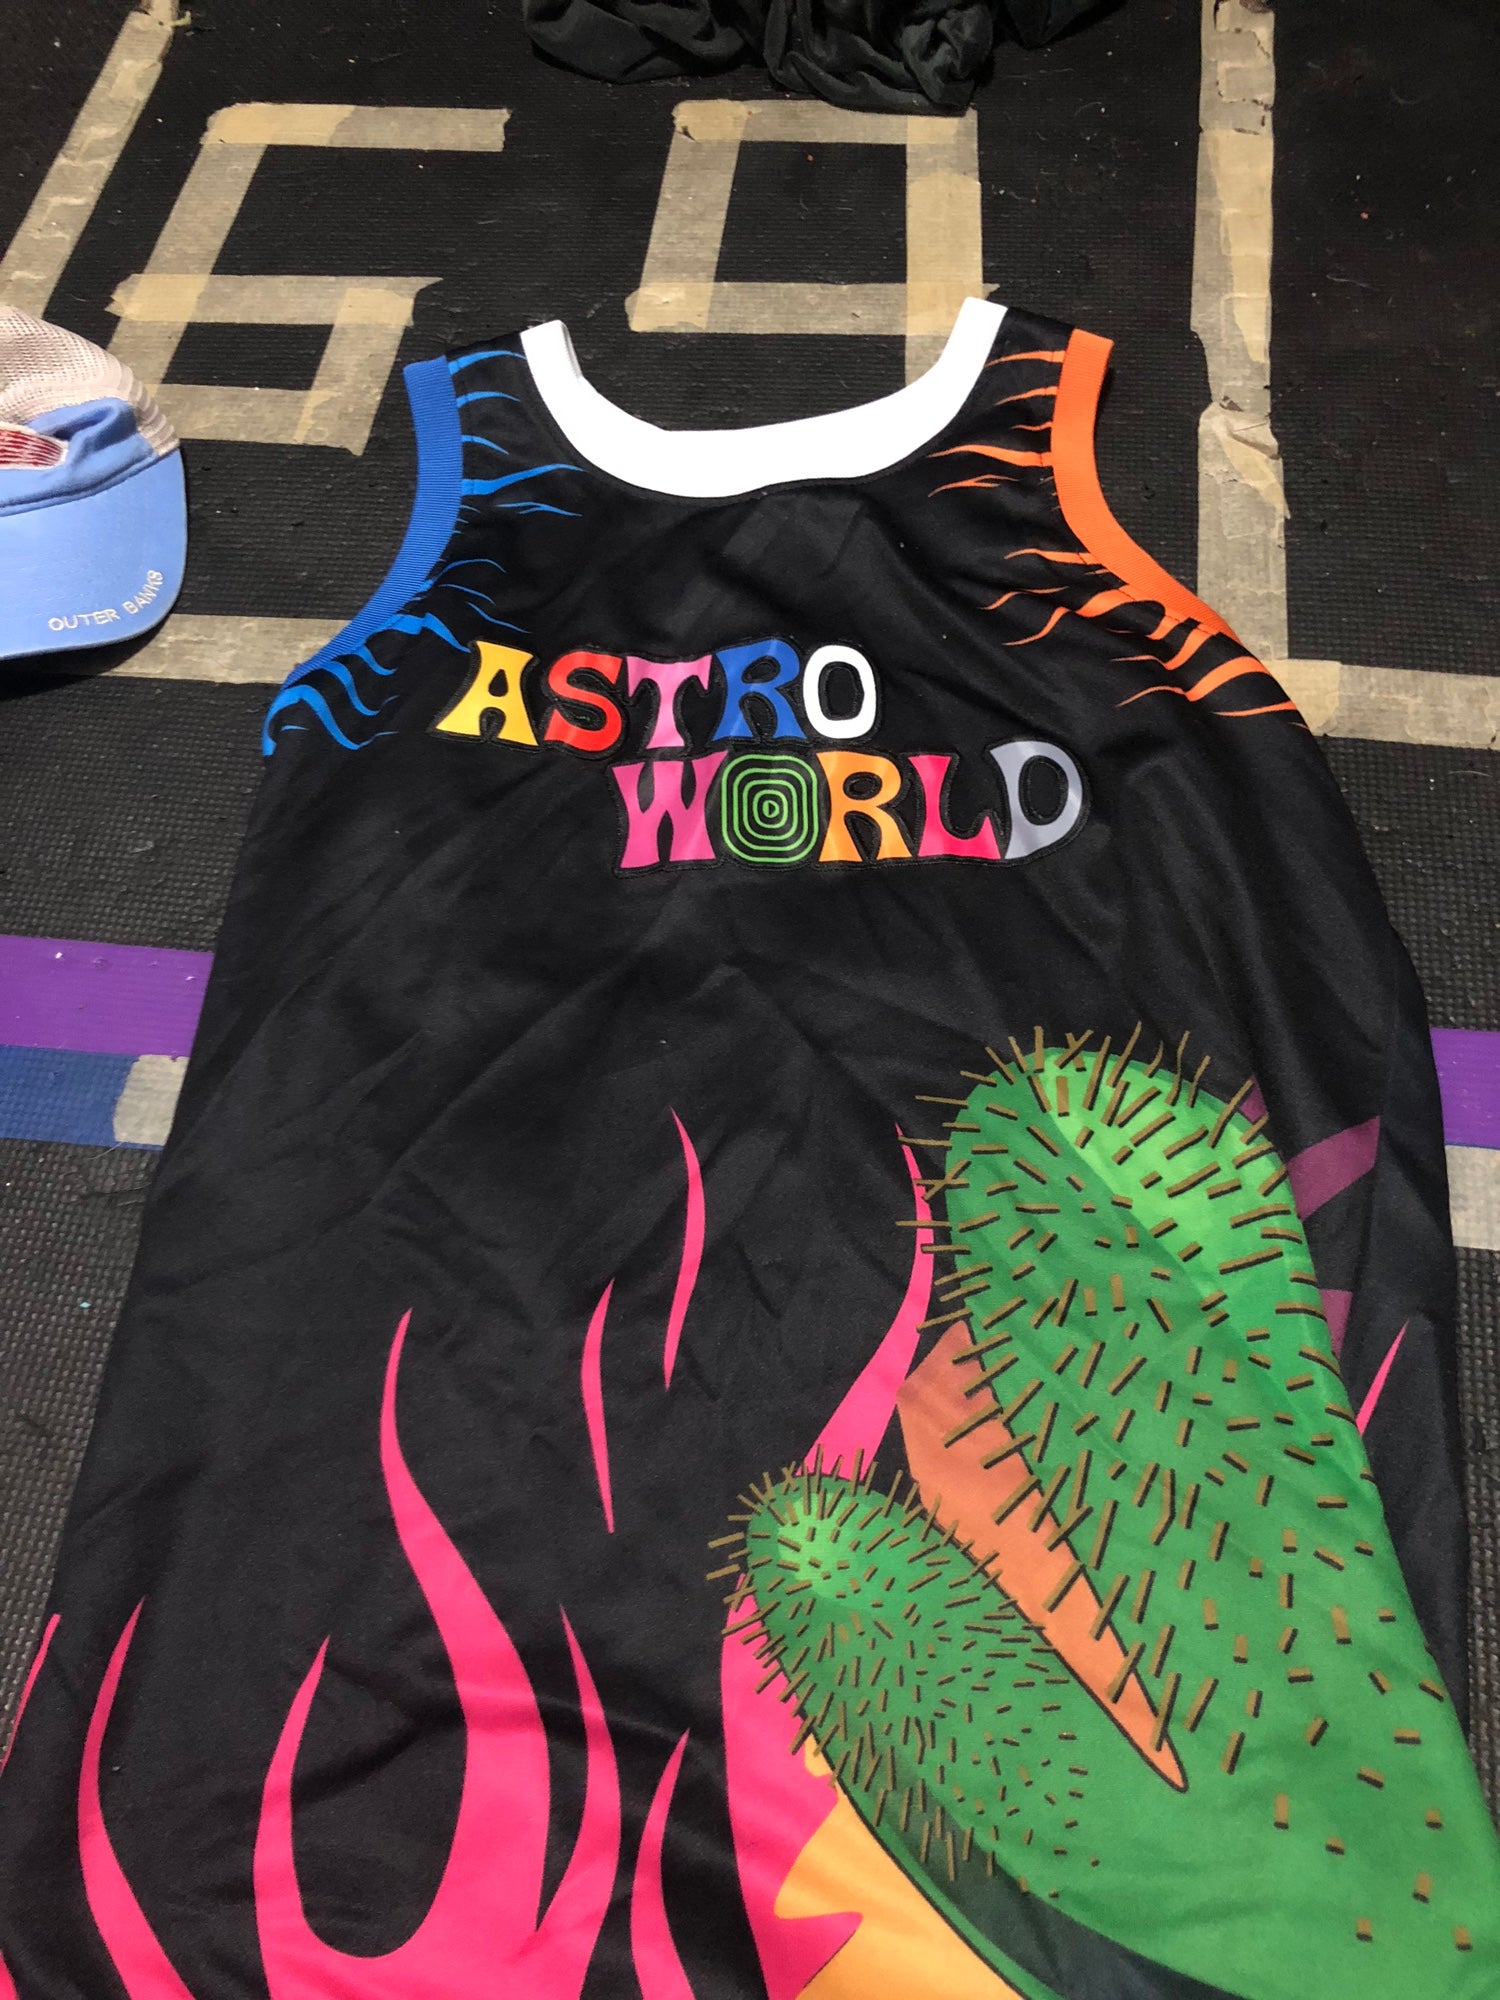 Astro world Travis Scott jersey